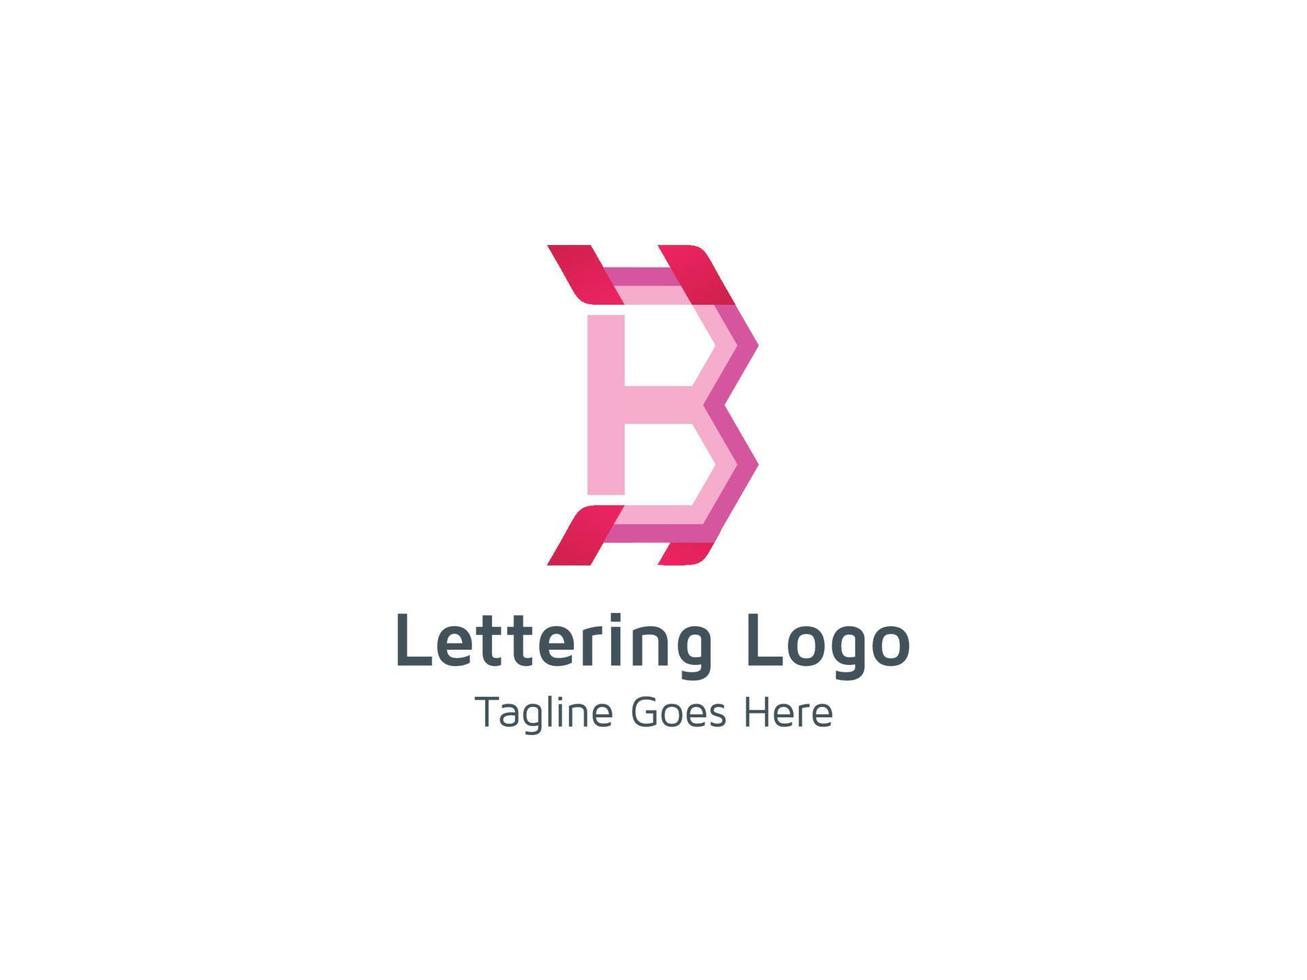 modelo de vetor profissional de design de conceito de logotipo criativo letra b